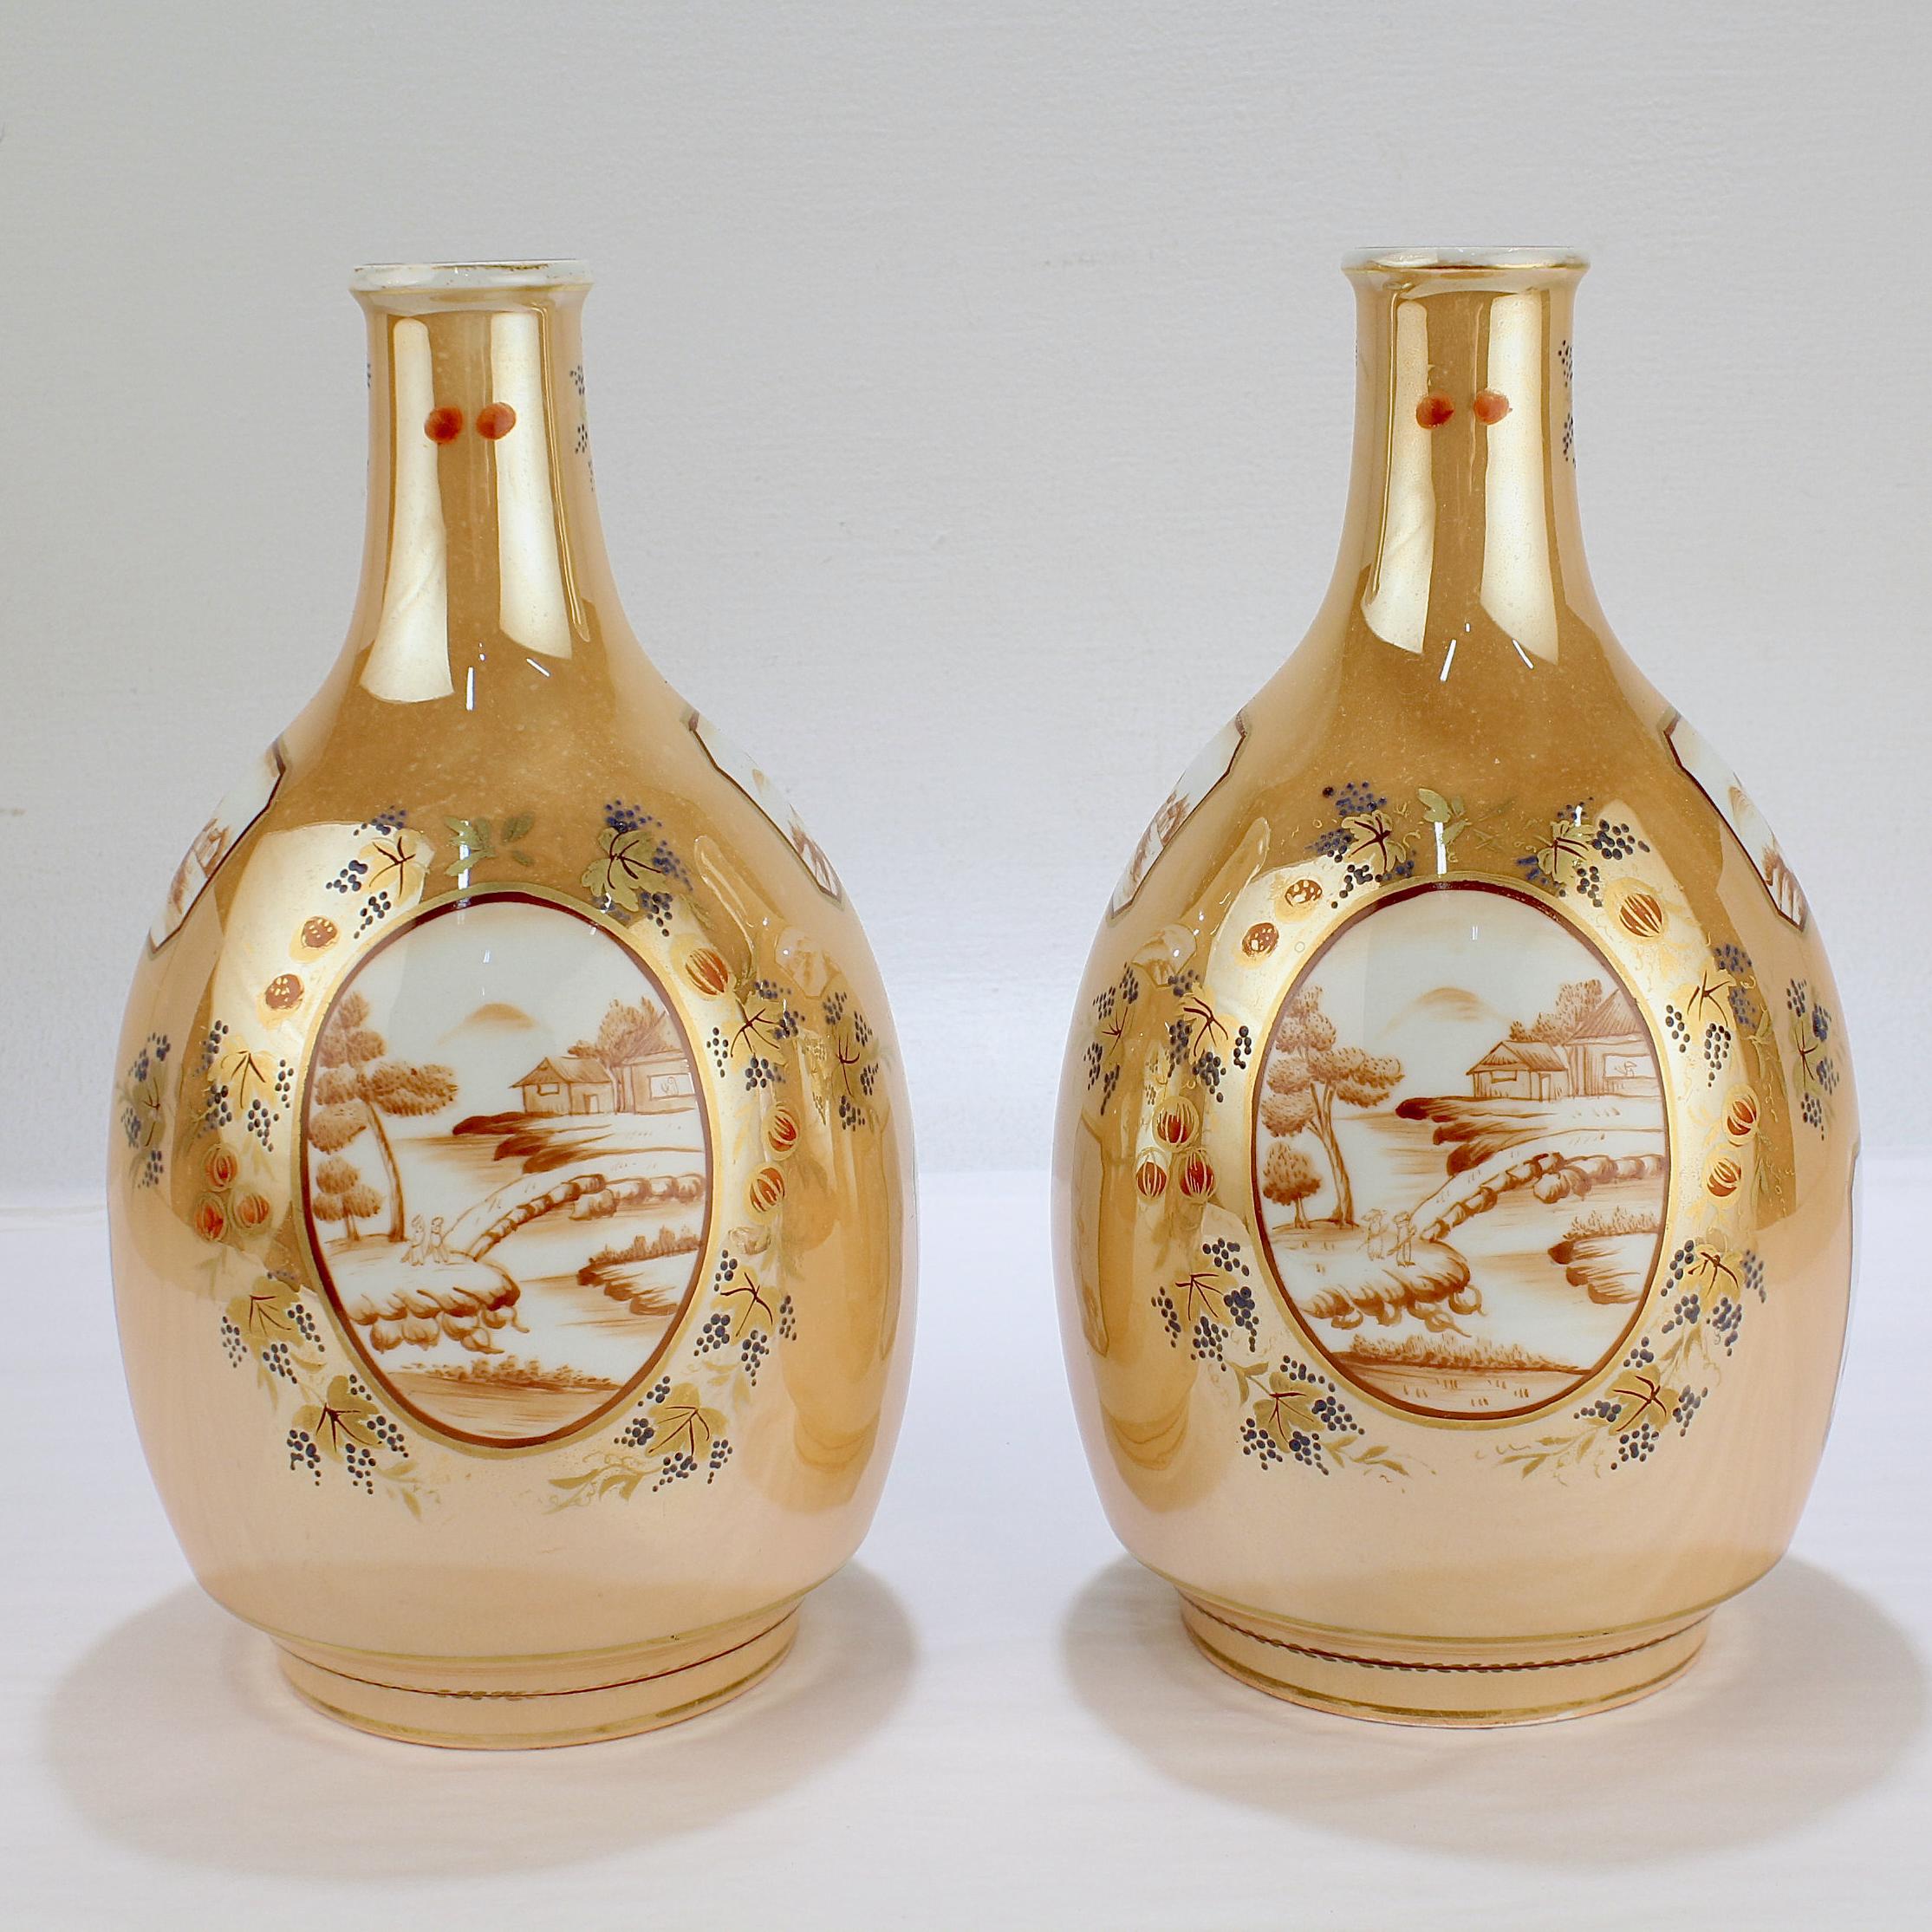 Une belle paire de vases bouteille de style export chinois.

Par la manufacture de porcelaine Samson et Cie. 

Avec des cartouches décorés de chinoiseries sur tous les côtés, un fond brun clair (presque café au lait) et un décor de vigne et de